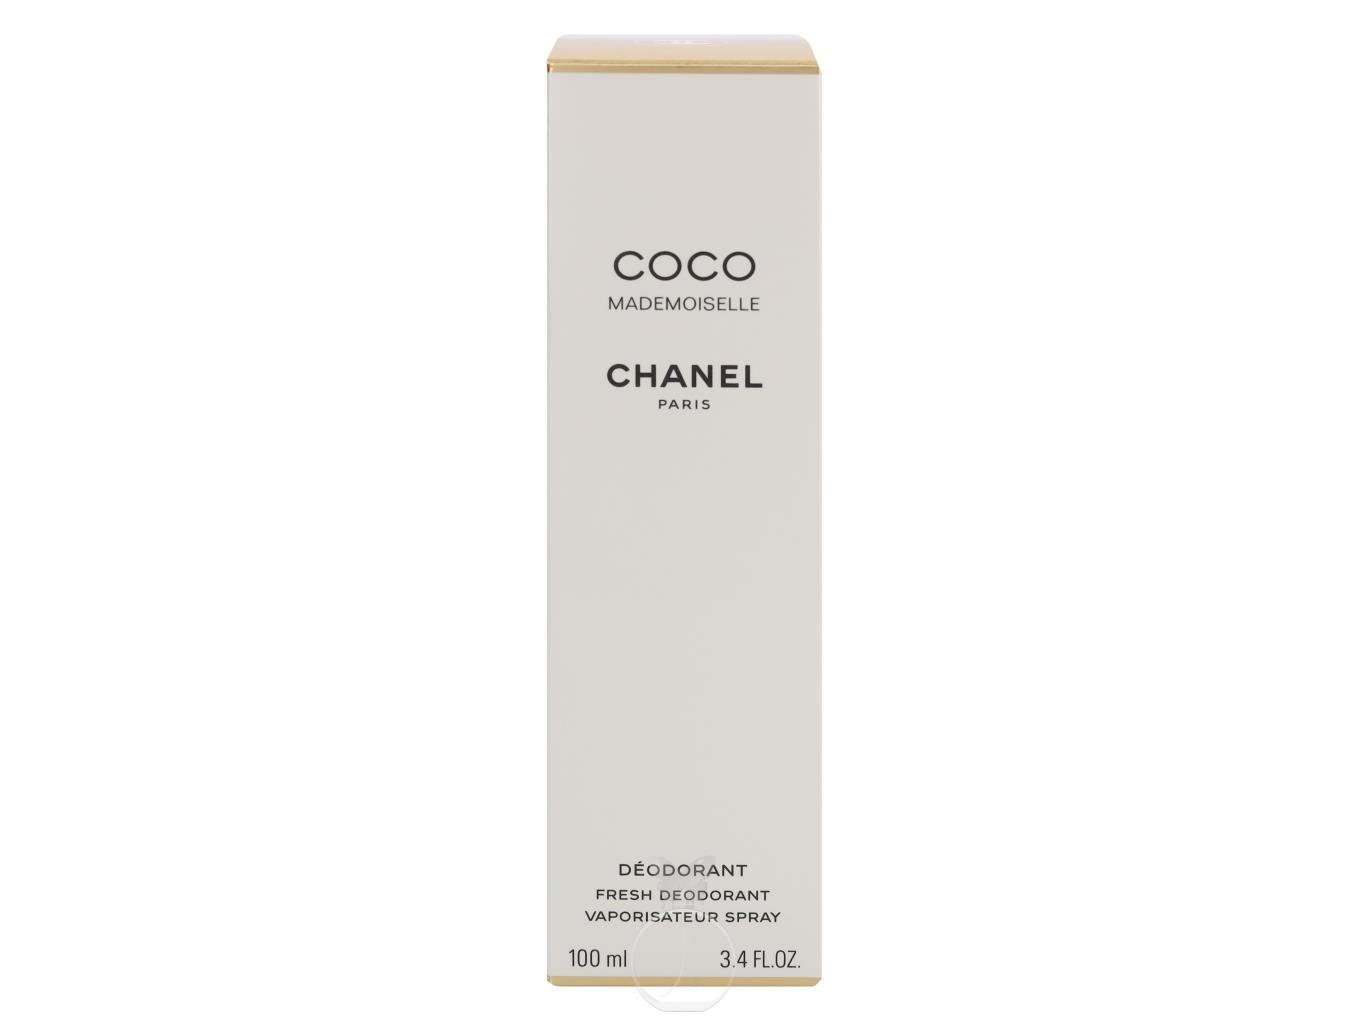 Chanel Körperpflegeduft Deodorant 100 CHANEL Mademoiselle ml Coco